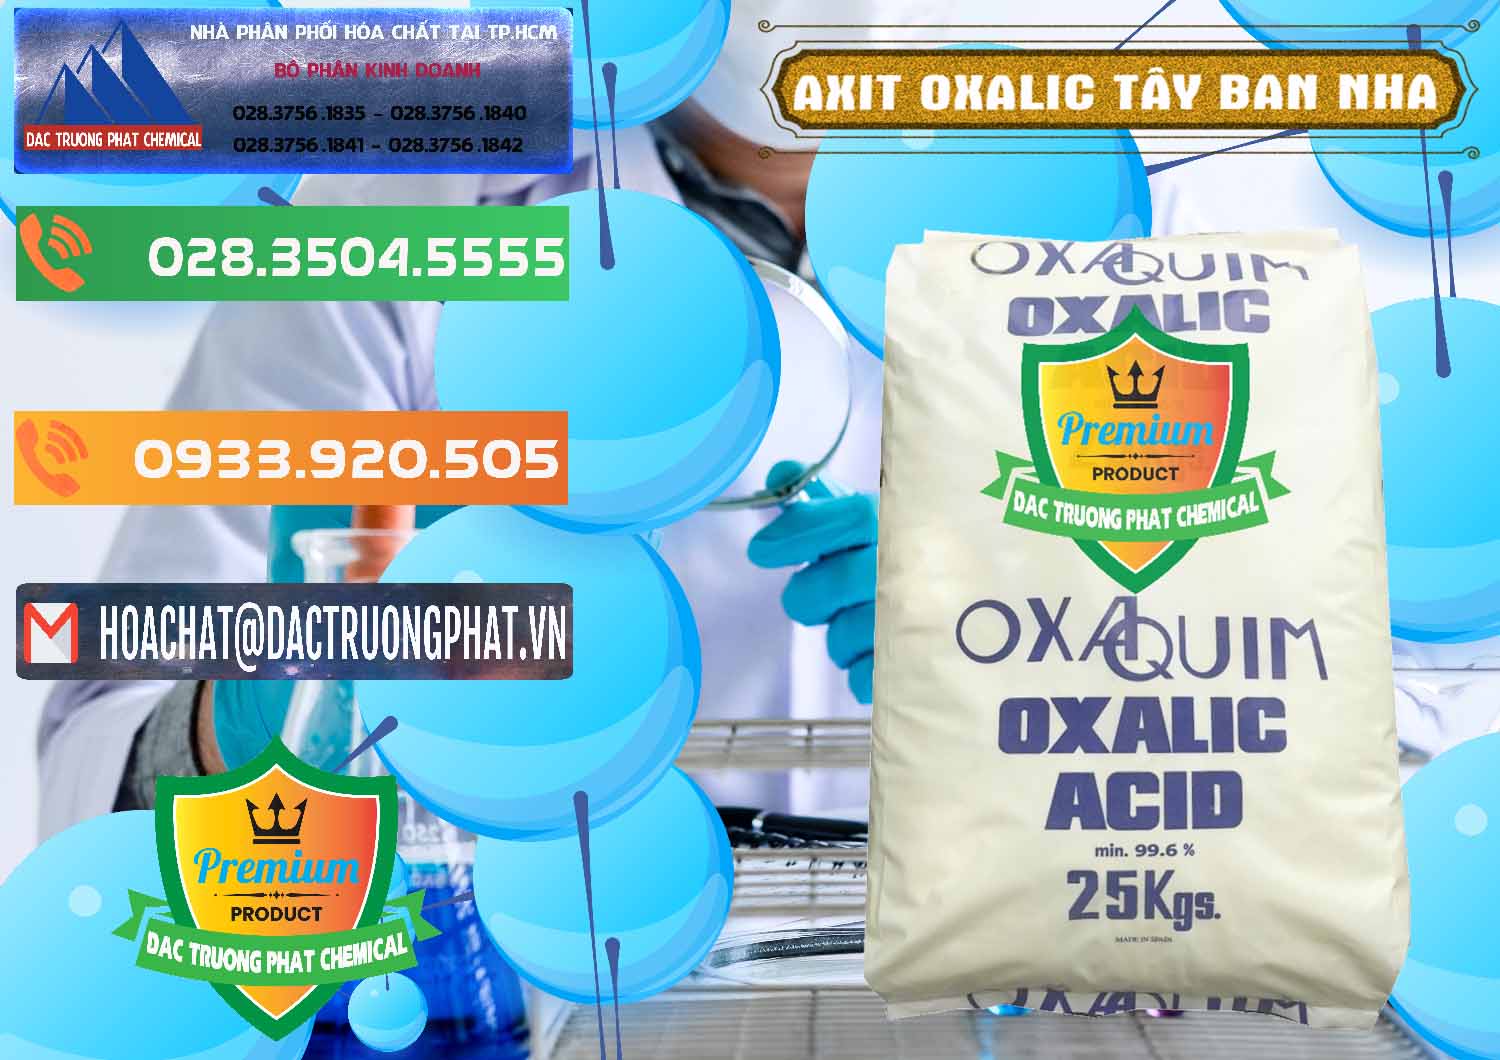 Công ty bán _ cung ứng Acid Oxalic – Axit Oxalic 99.6% Tây Ban Nha Spain - 0269 - Bán và cung cấp hóa chất tại TP.HCM - hoachatxulynuoc.com.vn